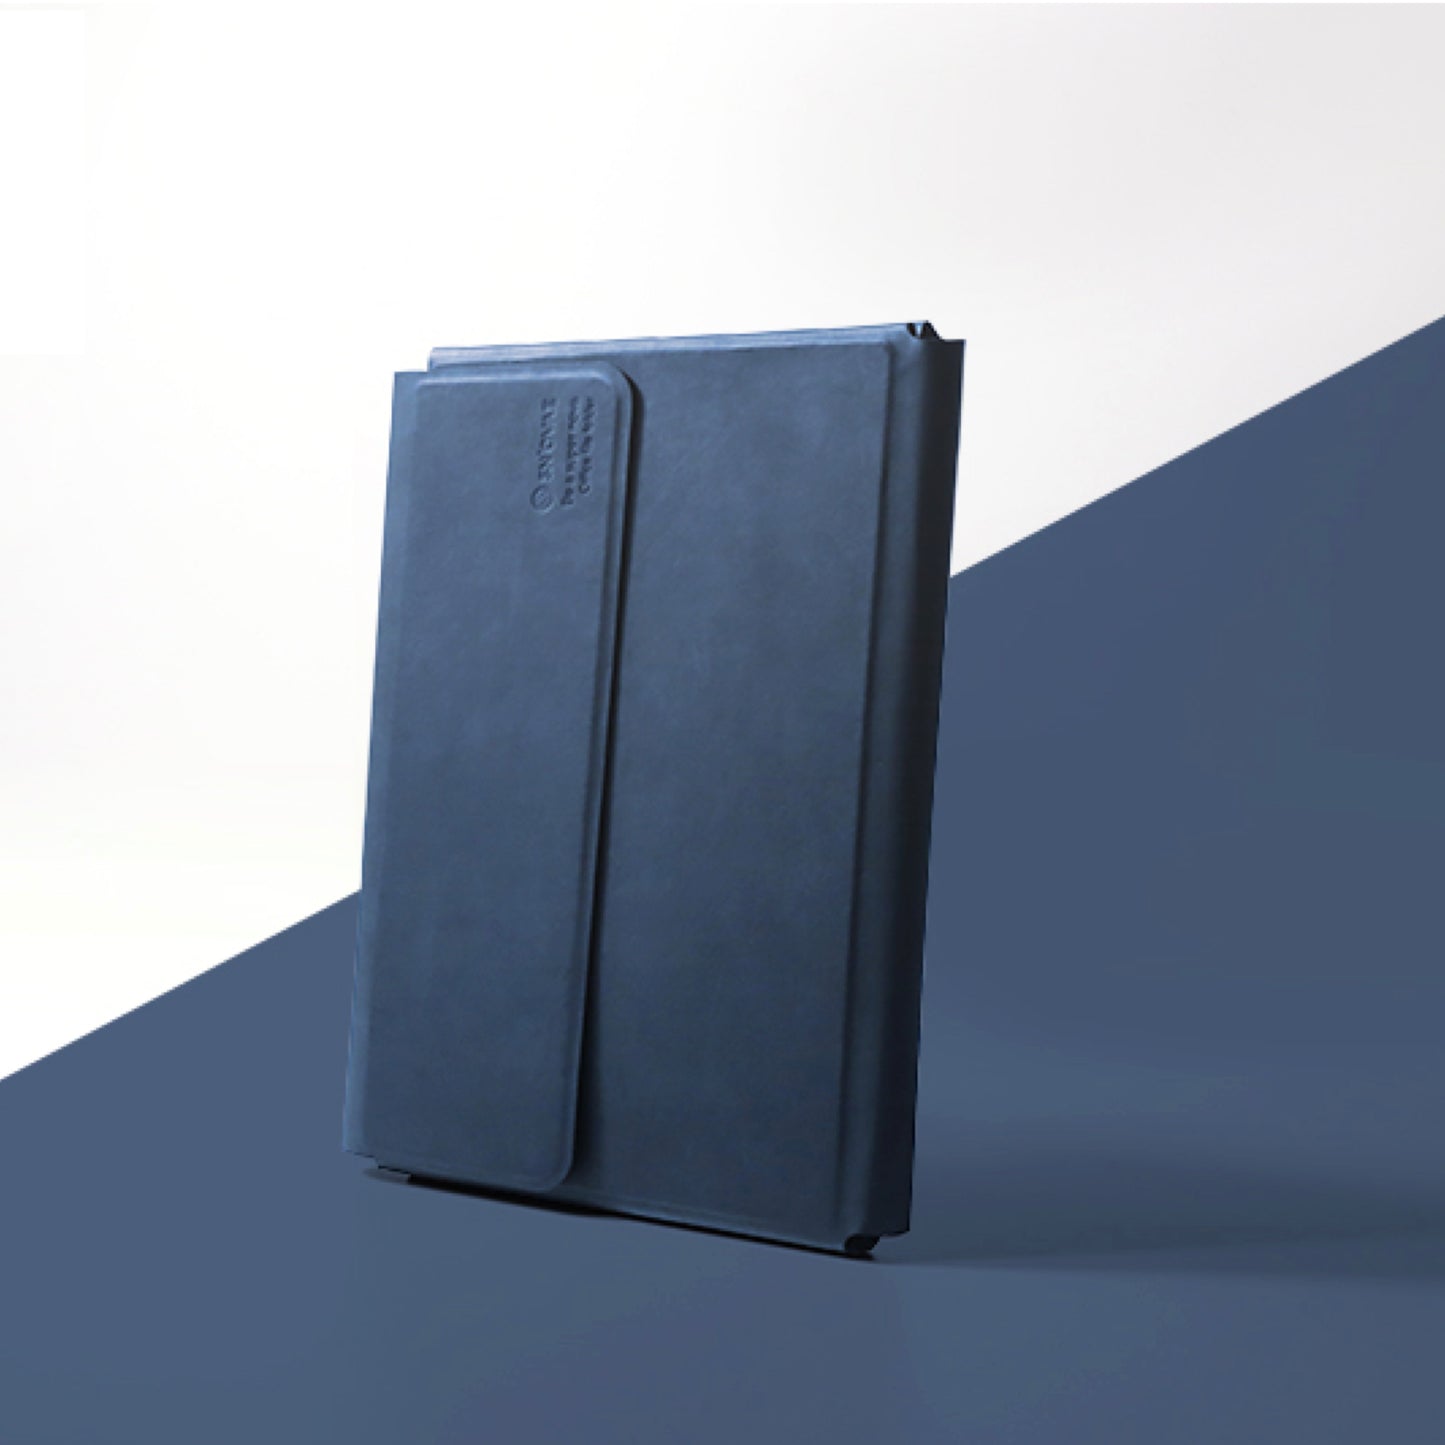 磁力で組み合わせるノートフォルダ「A5 office folder」